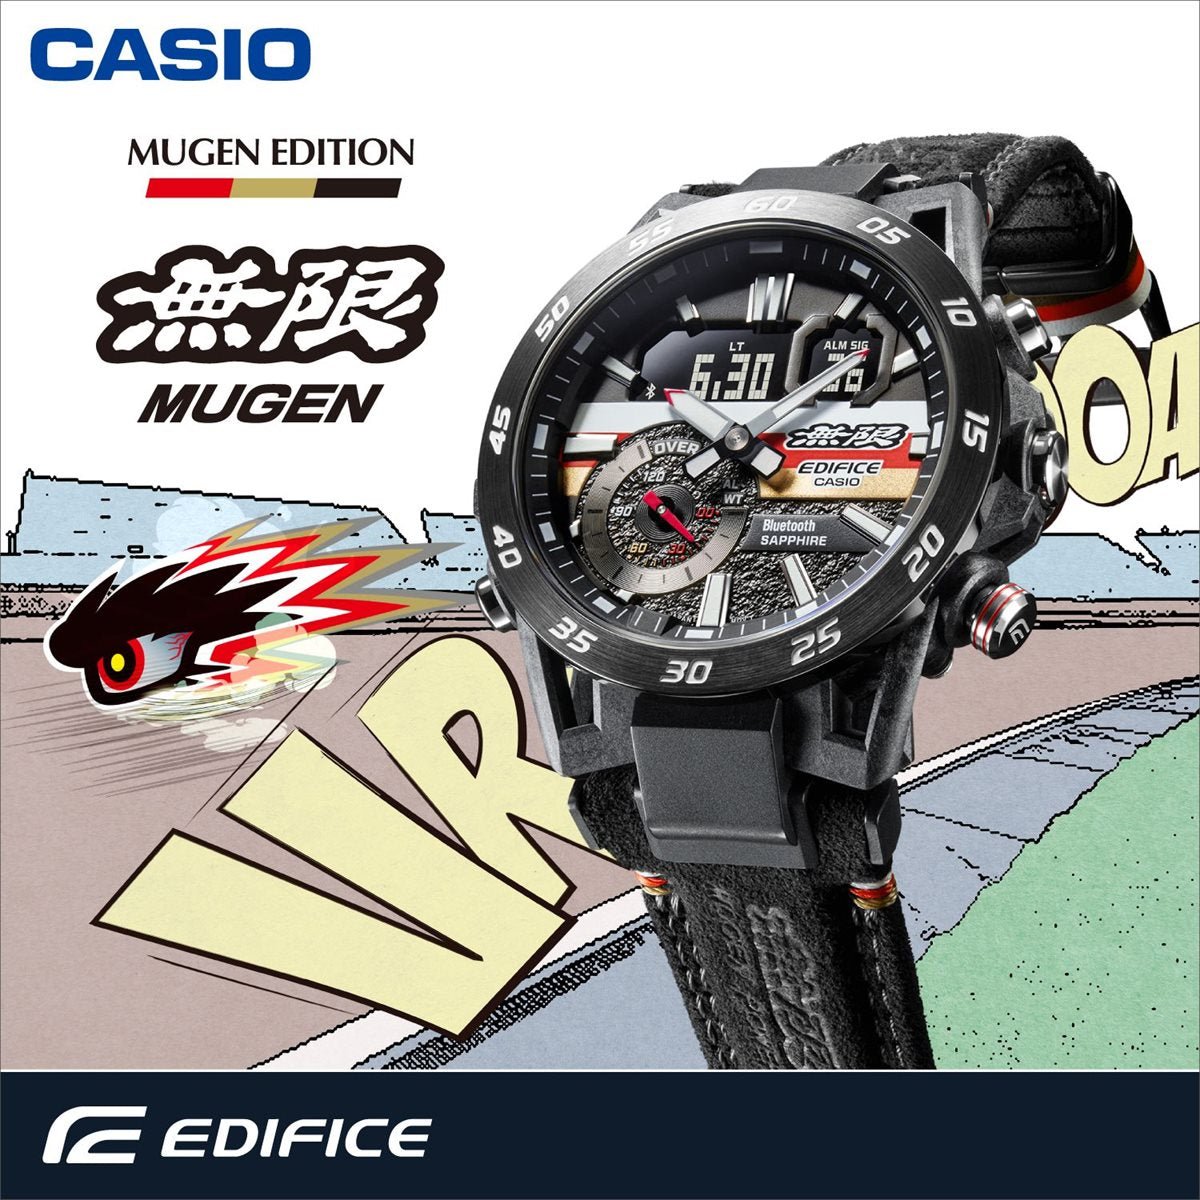 カシオ エディフィス CASIO EDIFICE MUGEN EDITION 限定モデル 腕時計 メンズ クロノグラフ ECB-40MU-1AJR 無限 スマートフォンリンク